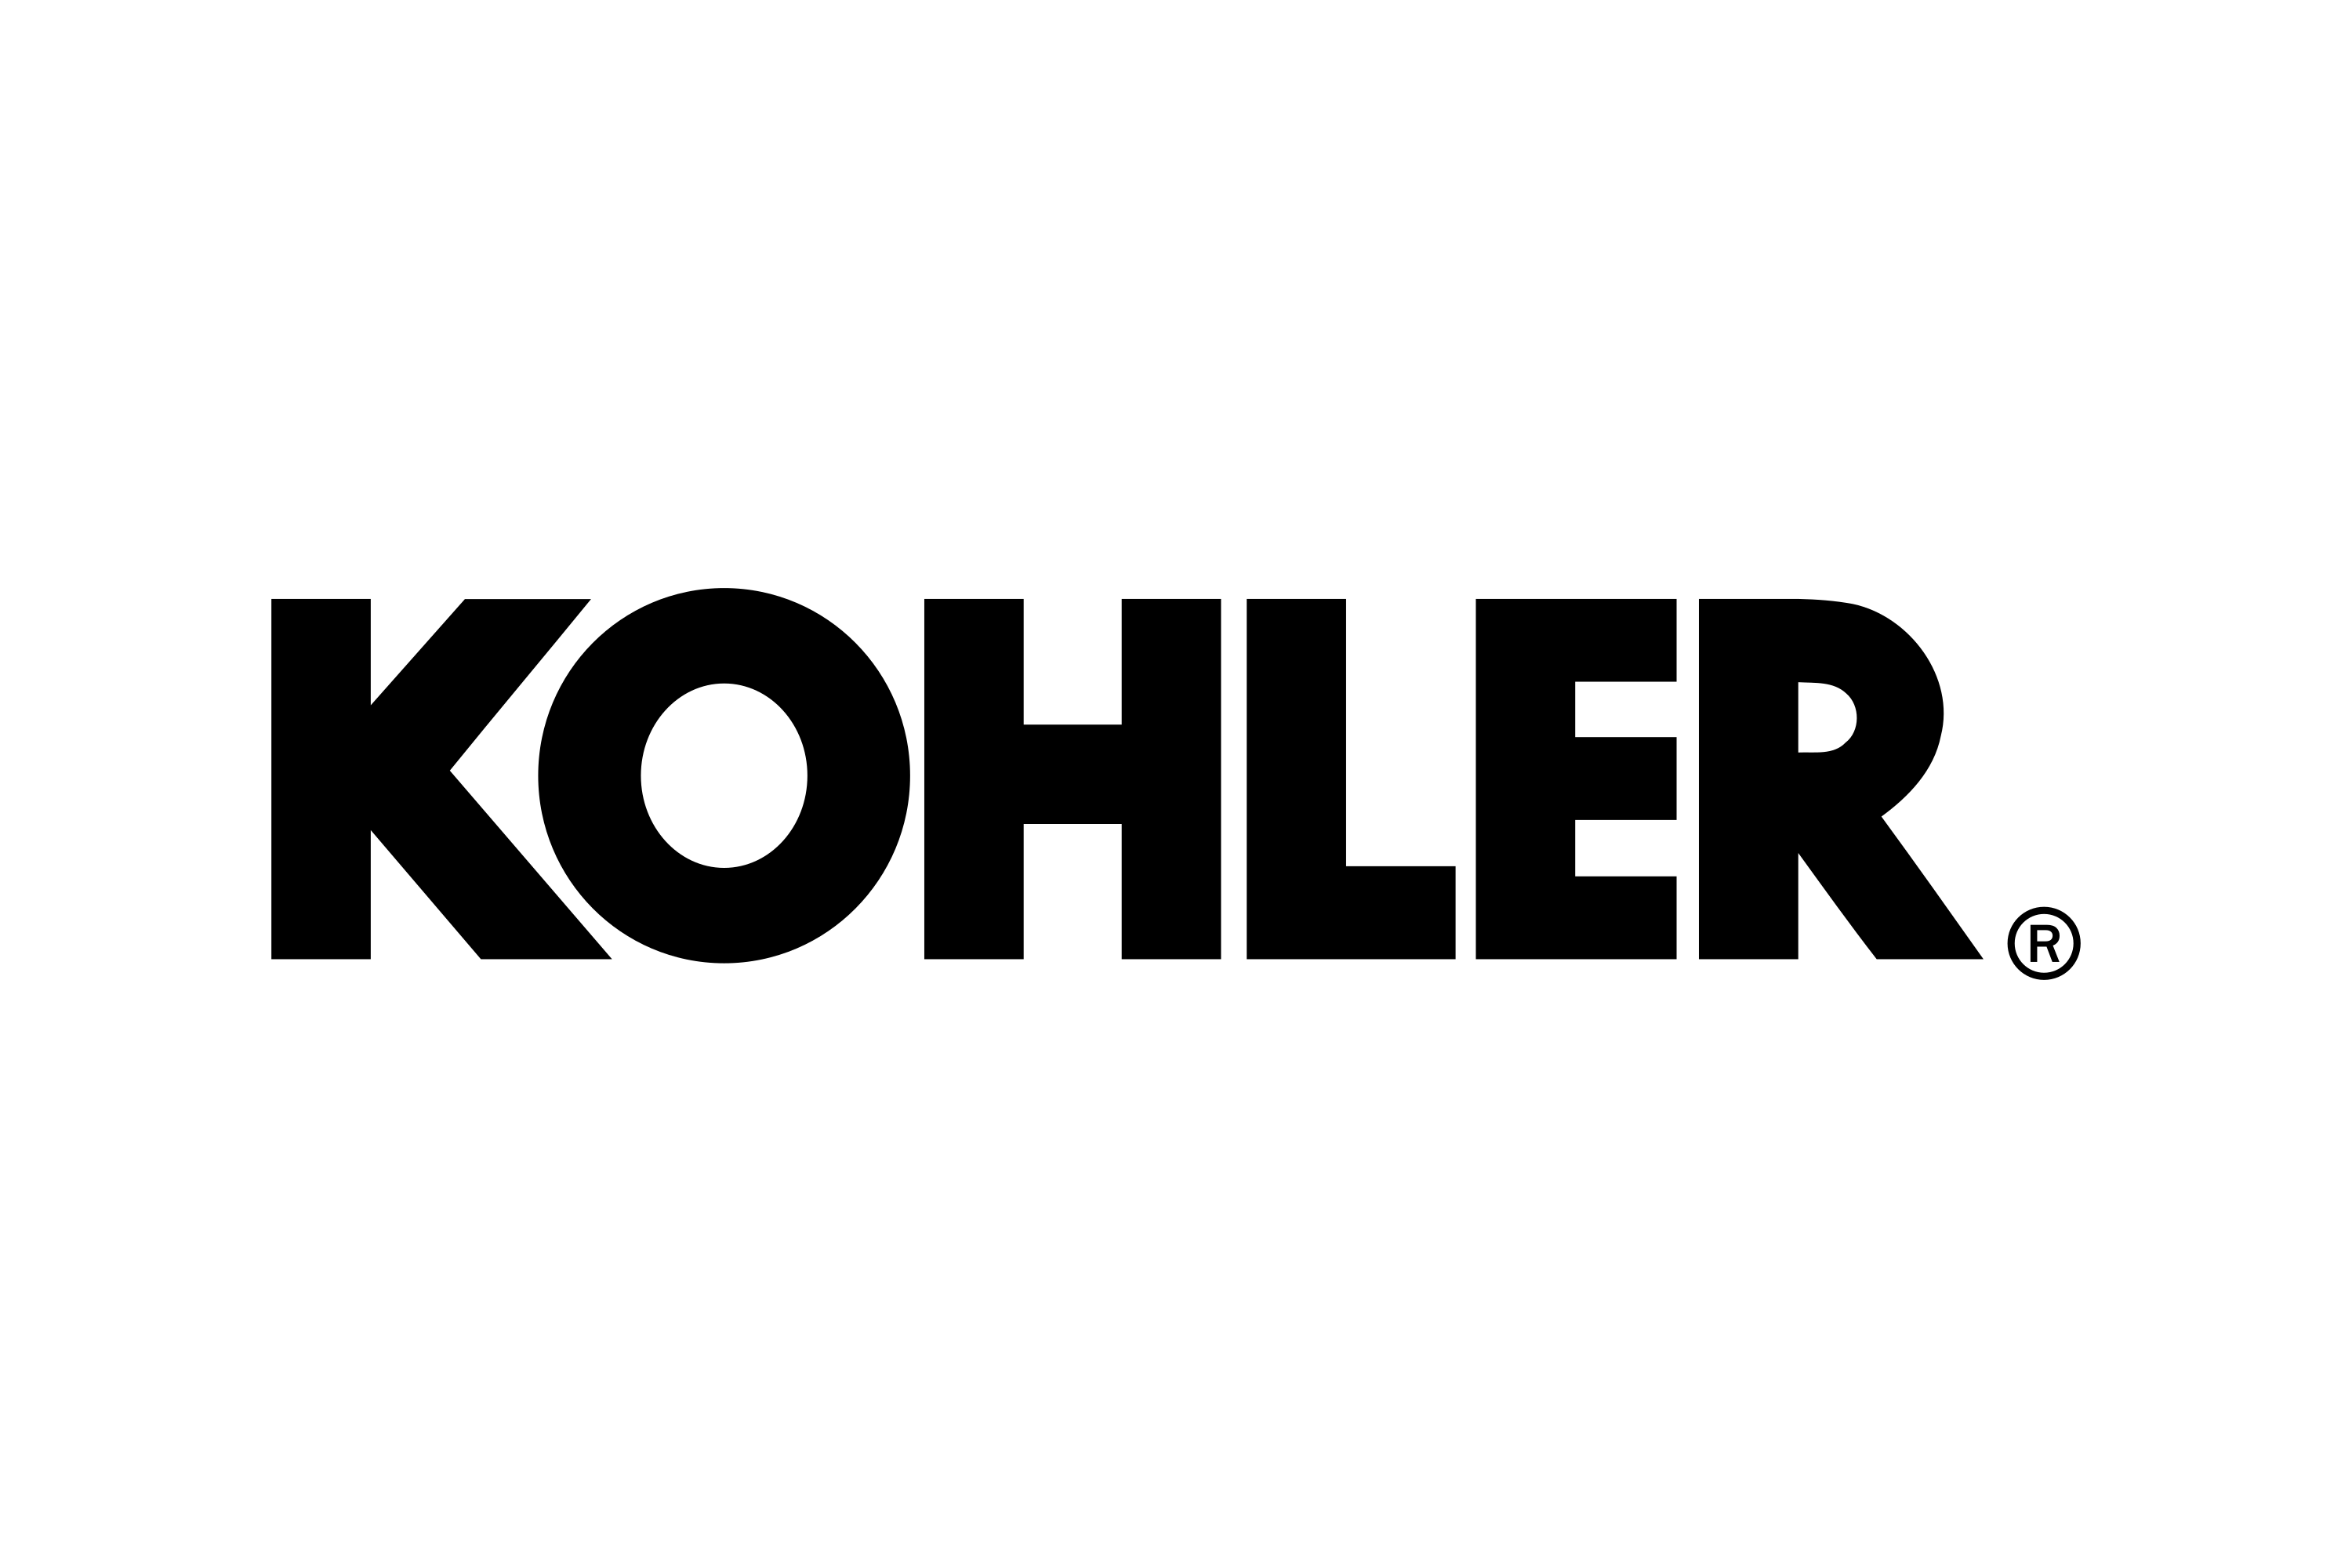 Kohler Power